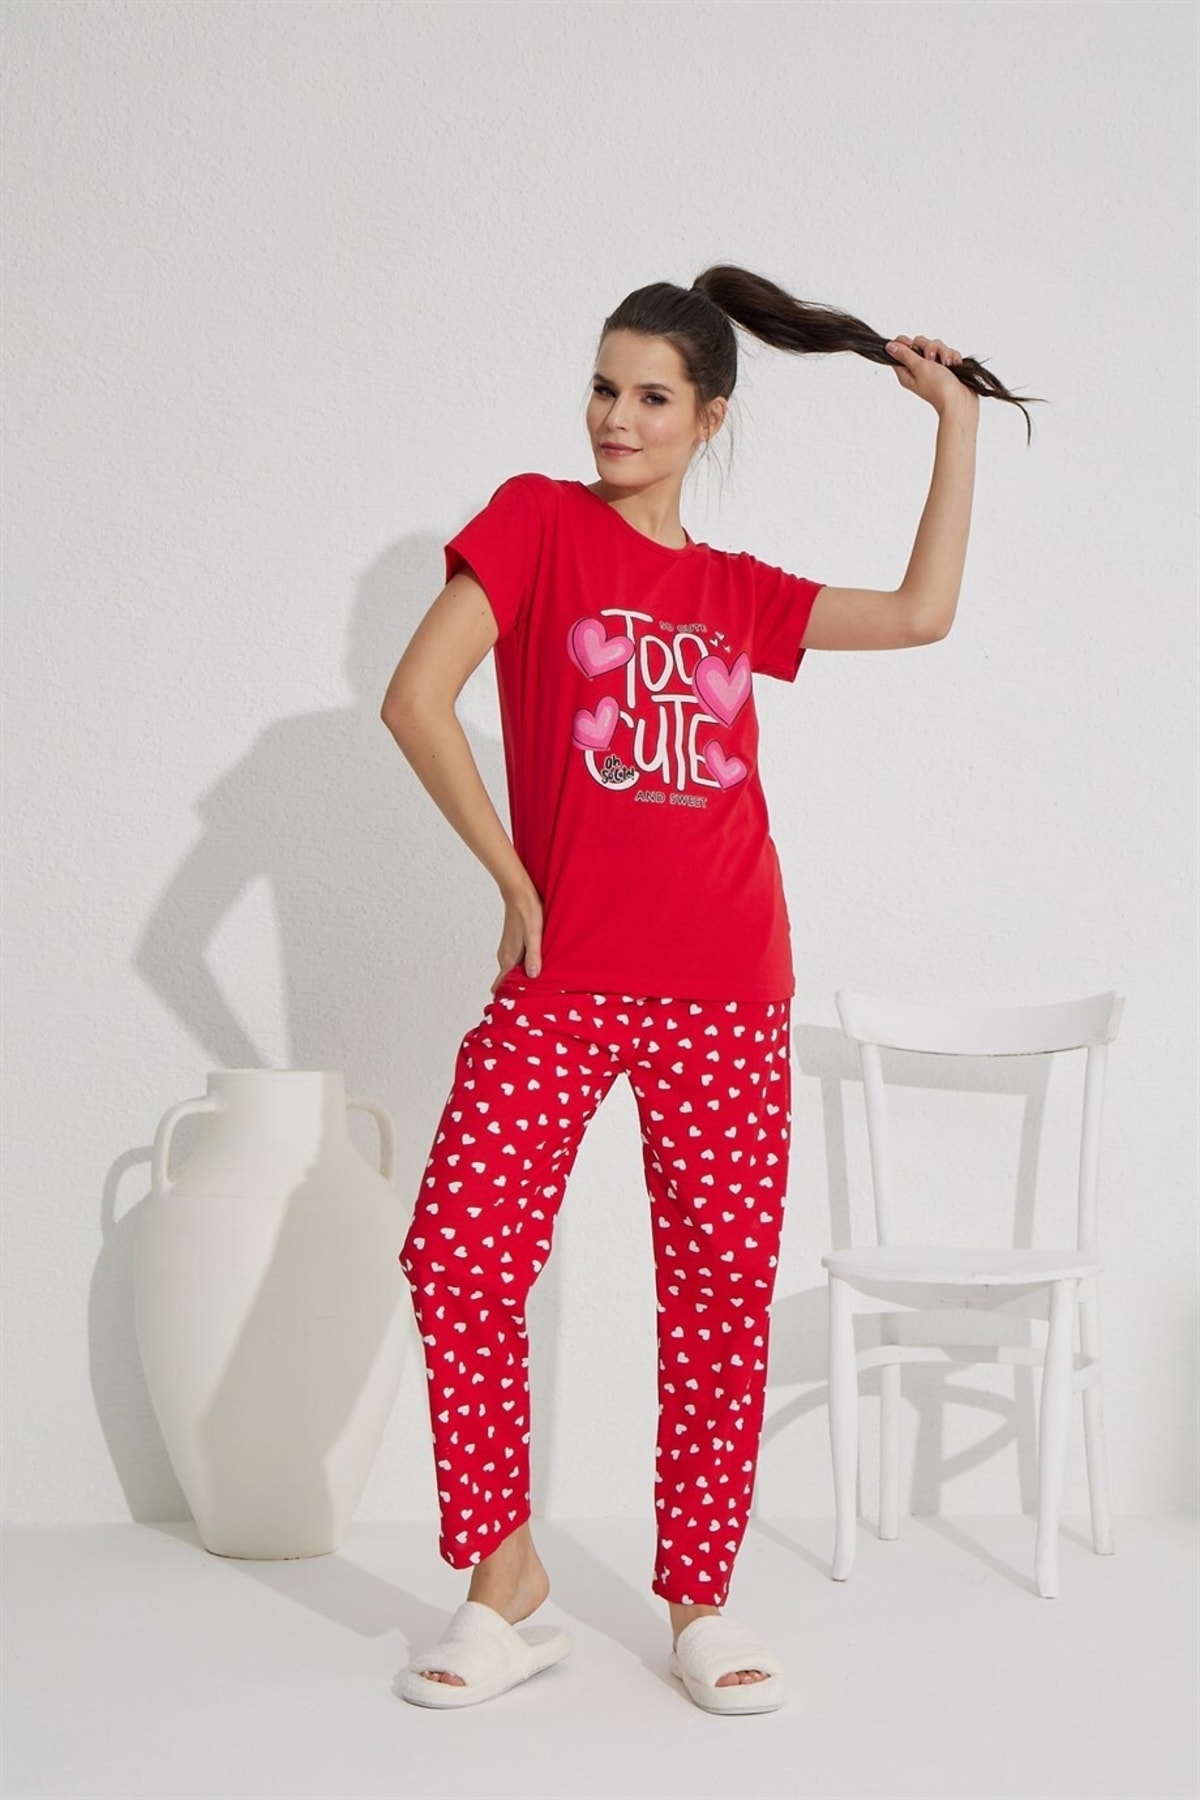 PIJAMASSTORE Too Cute Baskılı Kırmızı Renk Kısa Kol Üst Üzeri Kalp Desenli Pantolon Boy Pijama Takımı